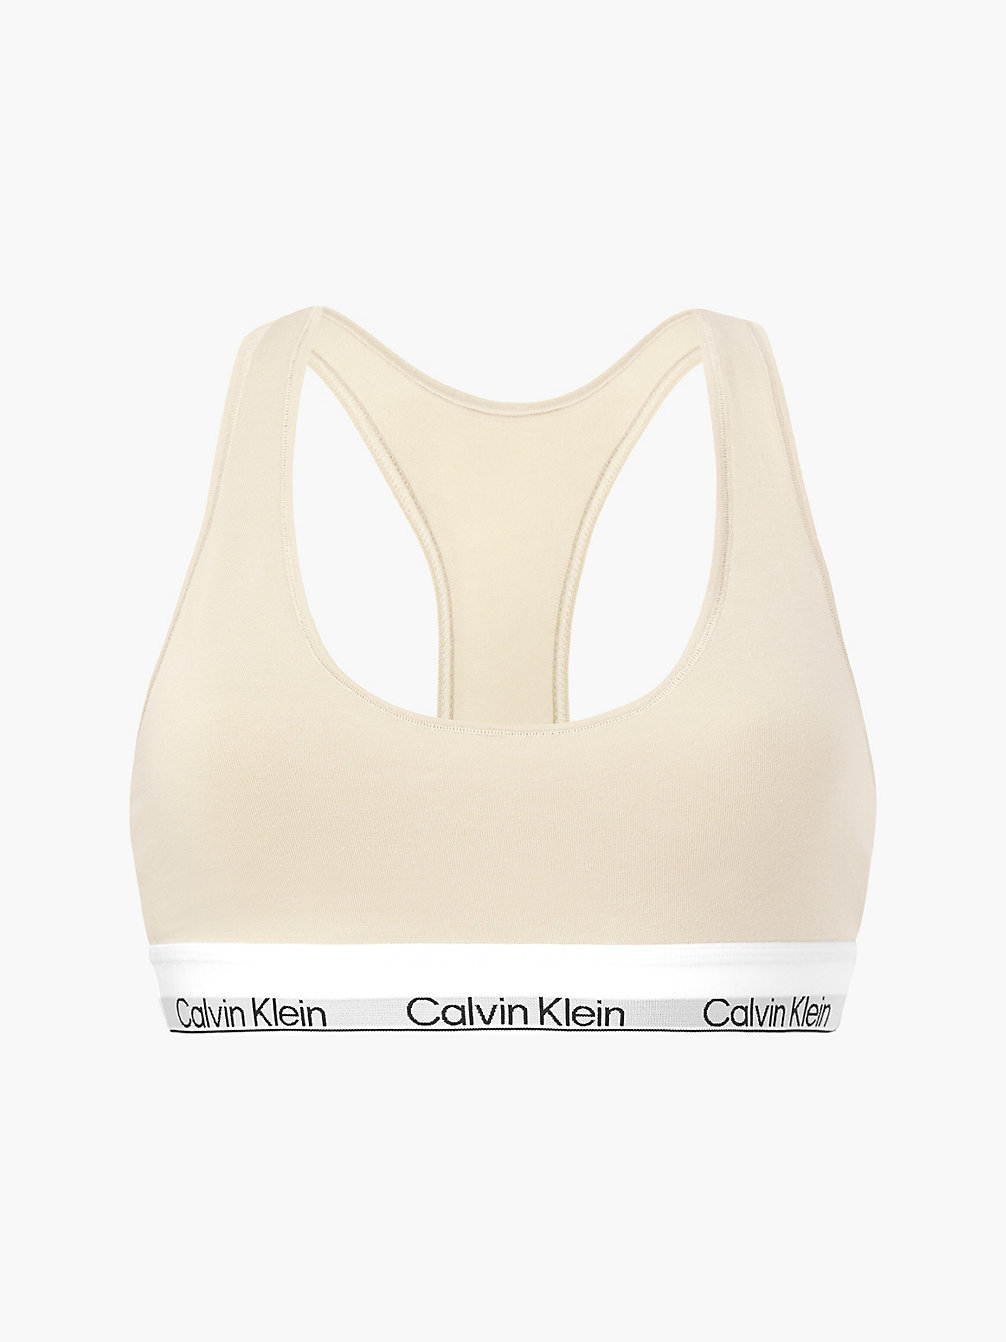 STONE Bralette - Modern Cotton undefined women Calvin Klein